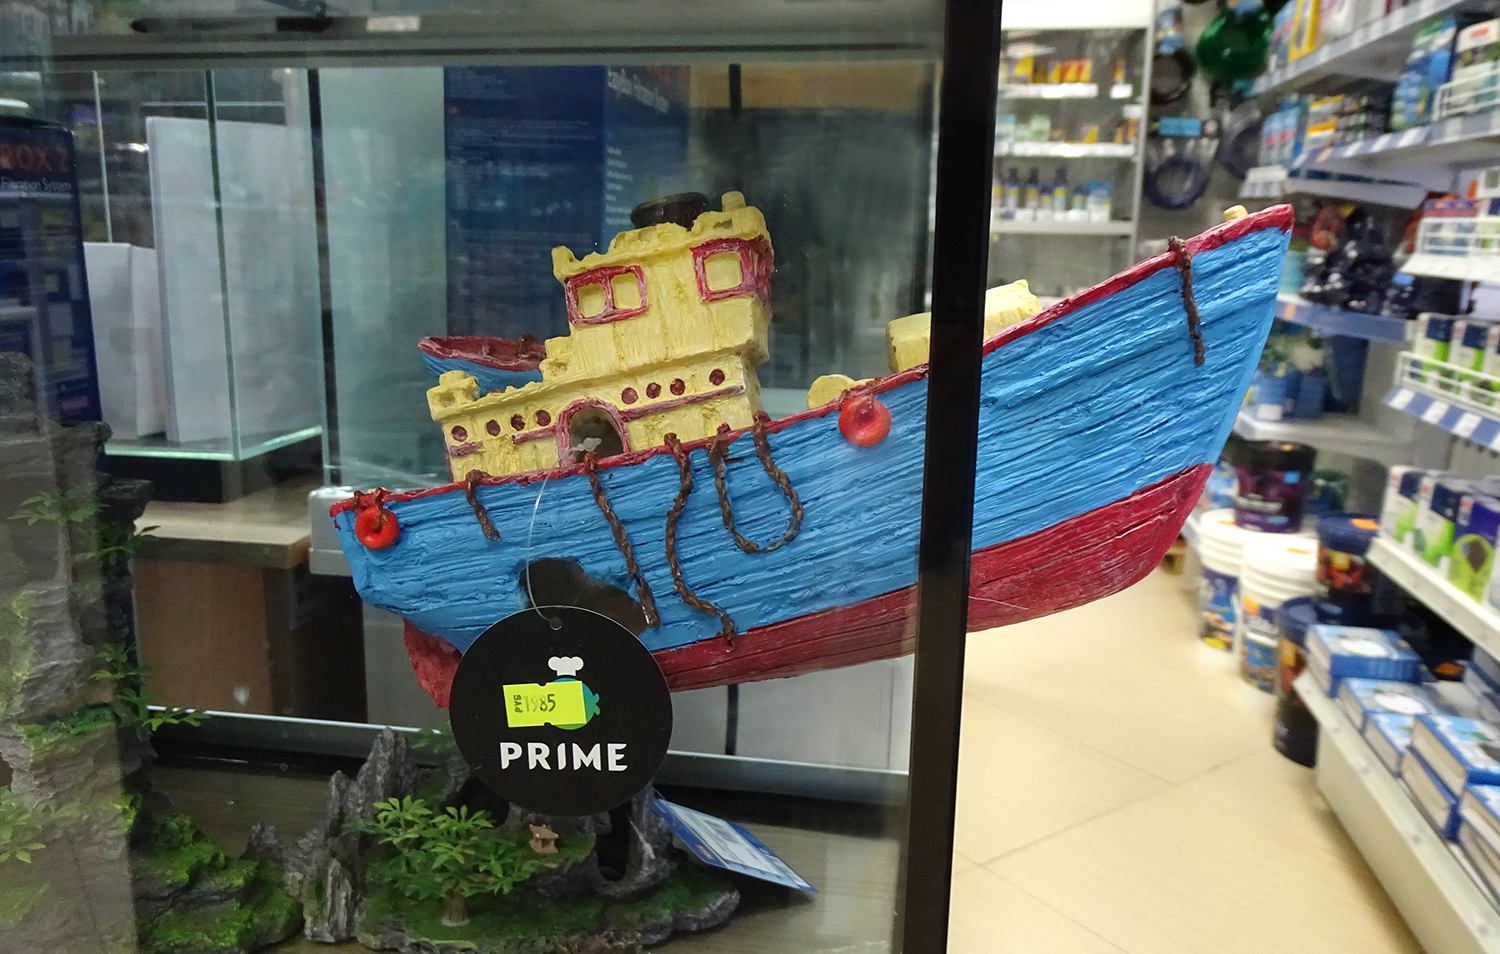 Декорация Prime на магнитах Буксир в продаже в супермаркетах Аква Лого!